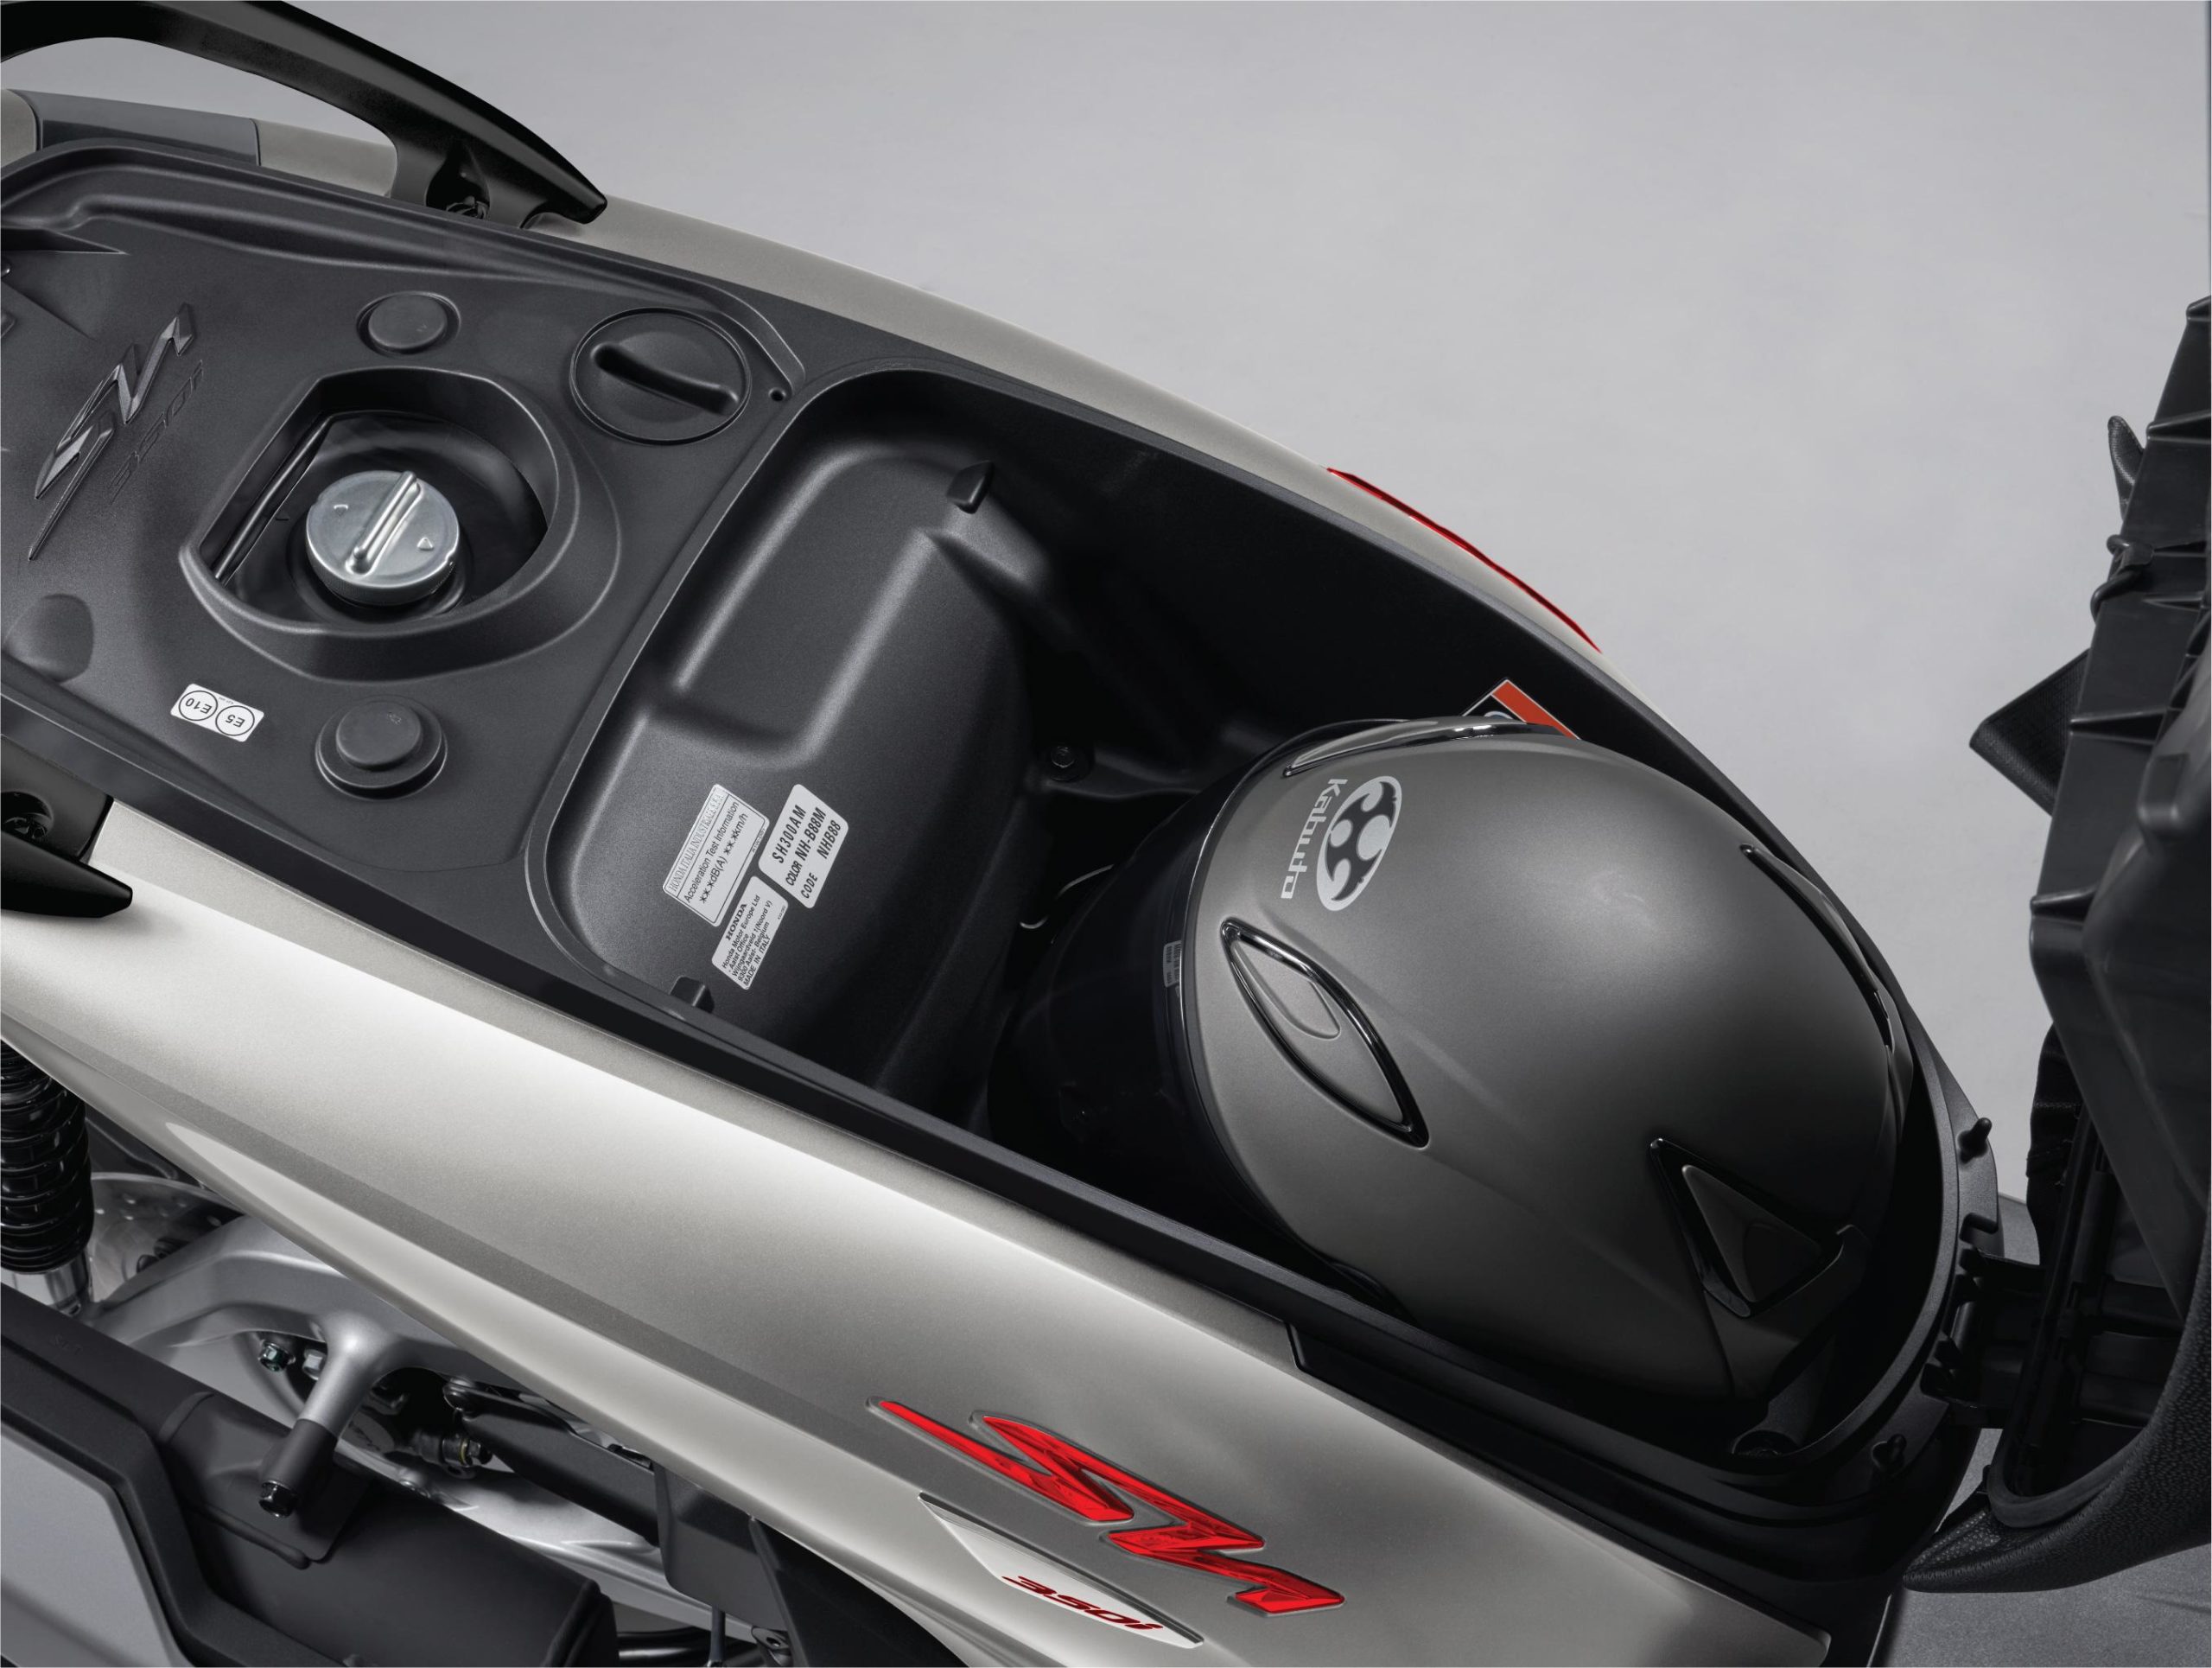 Cốp xe Honda SH 350i có thể chứa 1 mũ bảo hiểm cả đầu